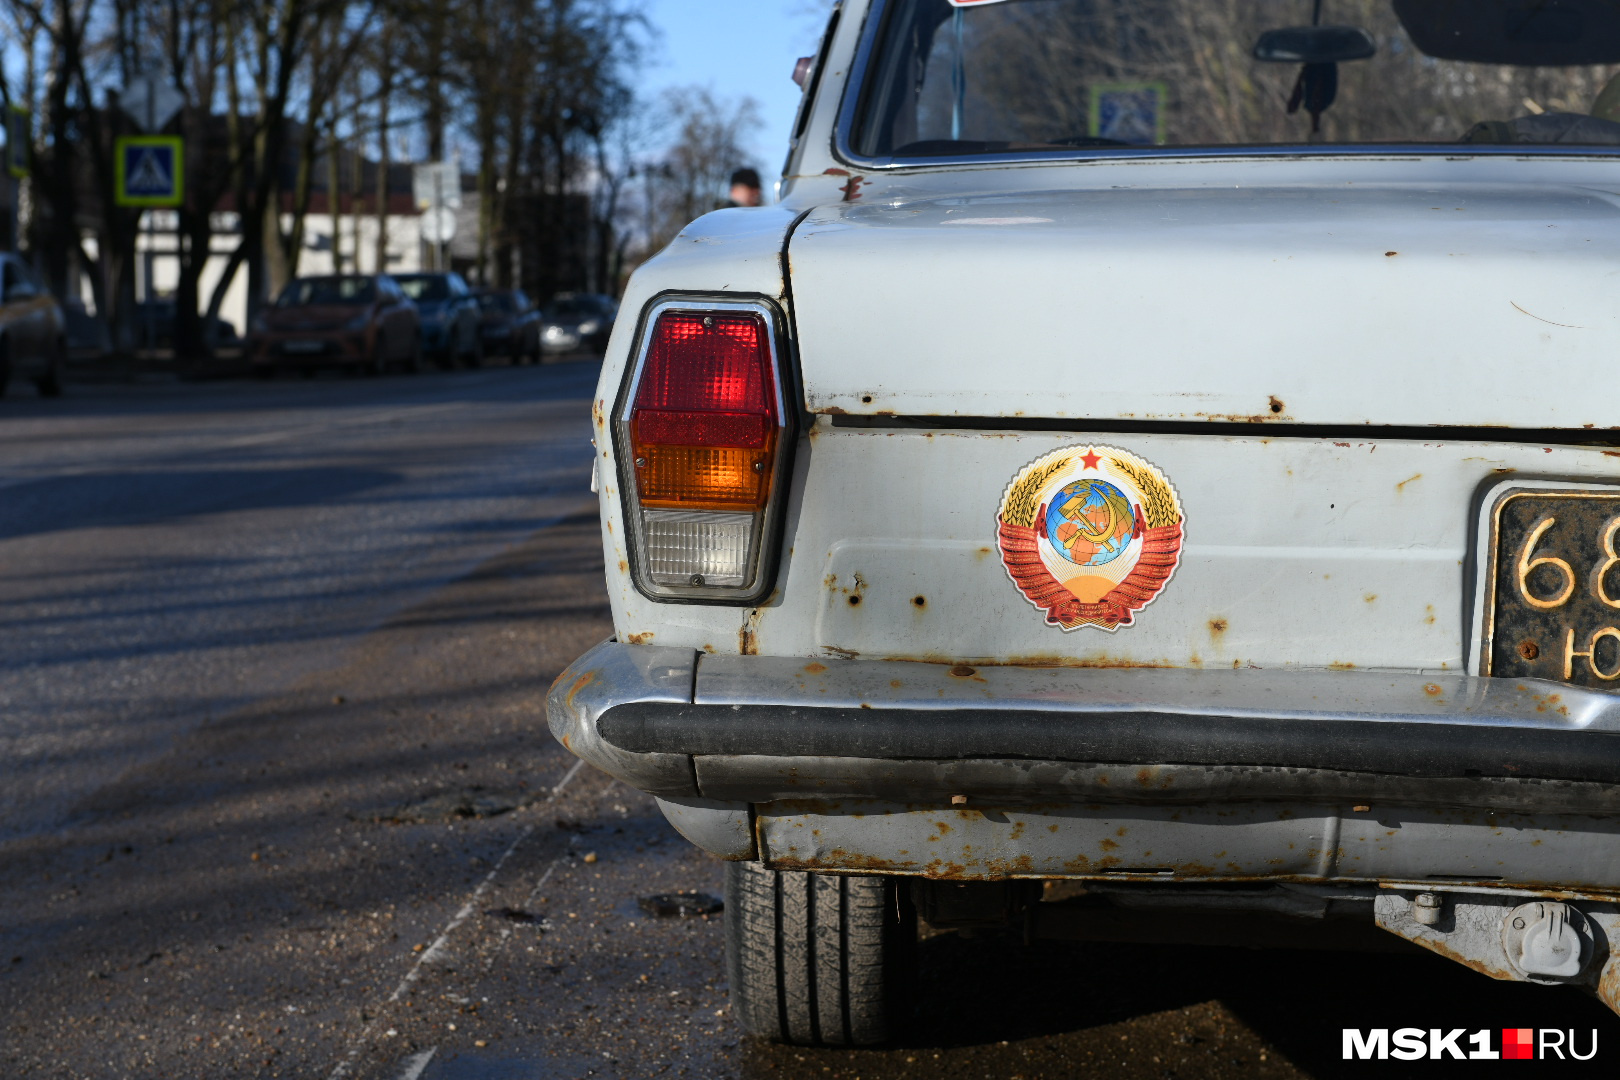 Сергей Головкин купил машину, благодаря которой удавалось быстрее находить своих жертв и привозить их в свой гараж в Одинцовском районе